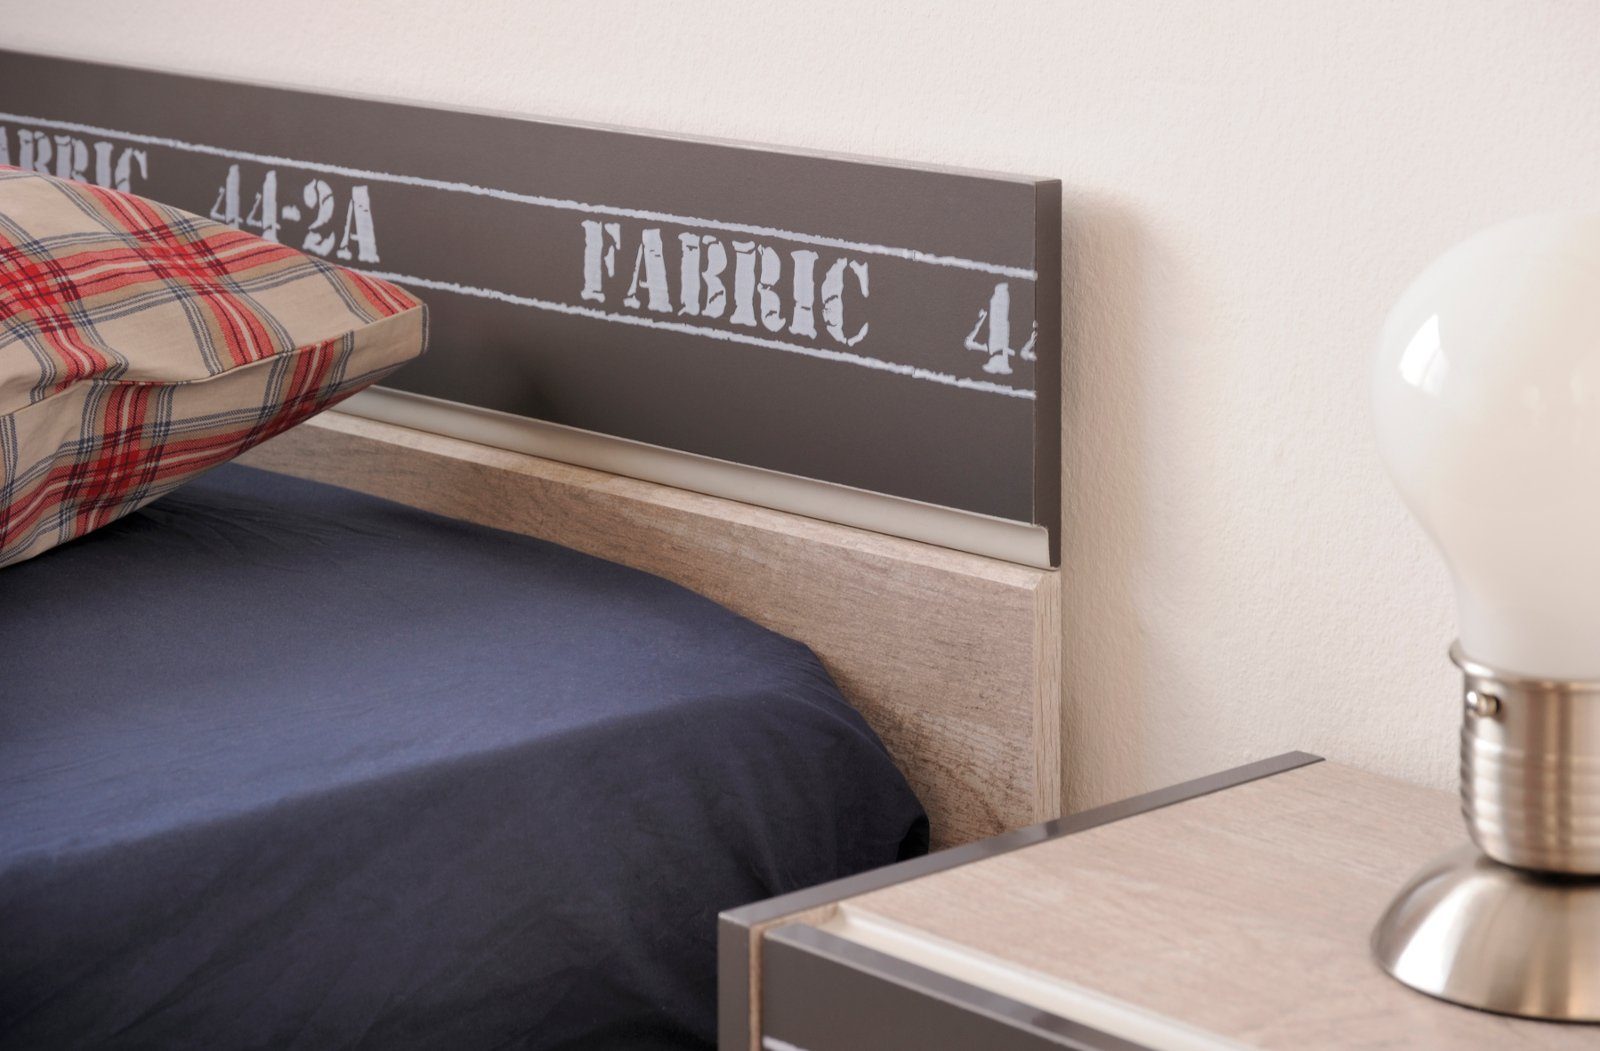 Fabric, extra Jugendzimmer-Set (Komplett-Set, Parisot Stauraum 5-teilig), mit viel